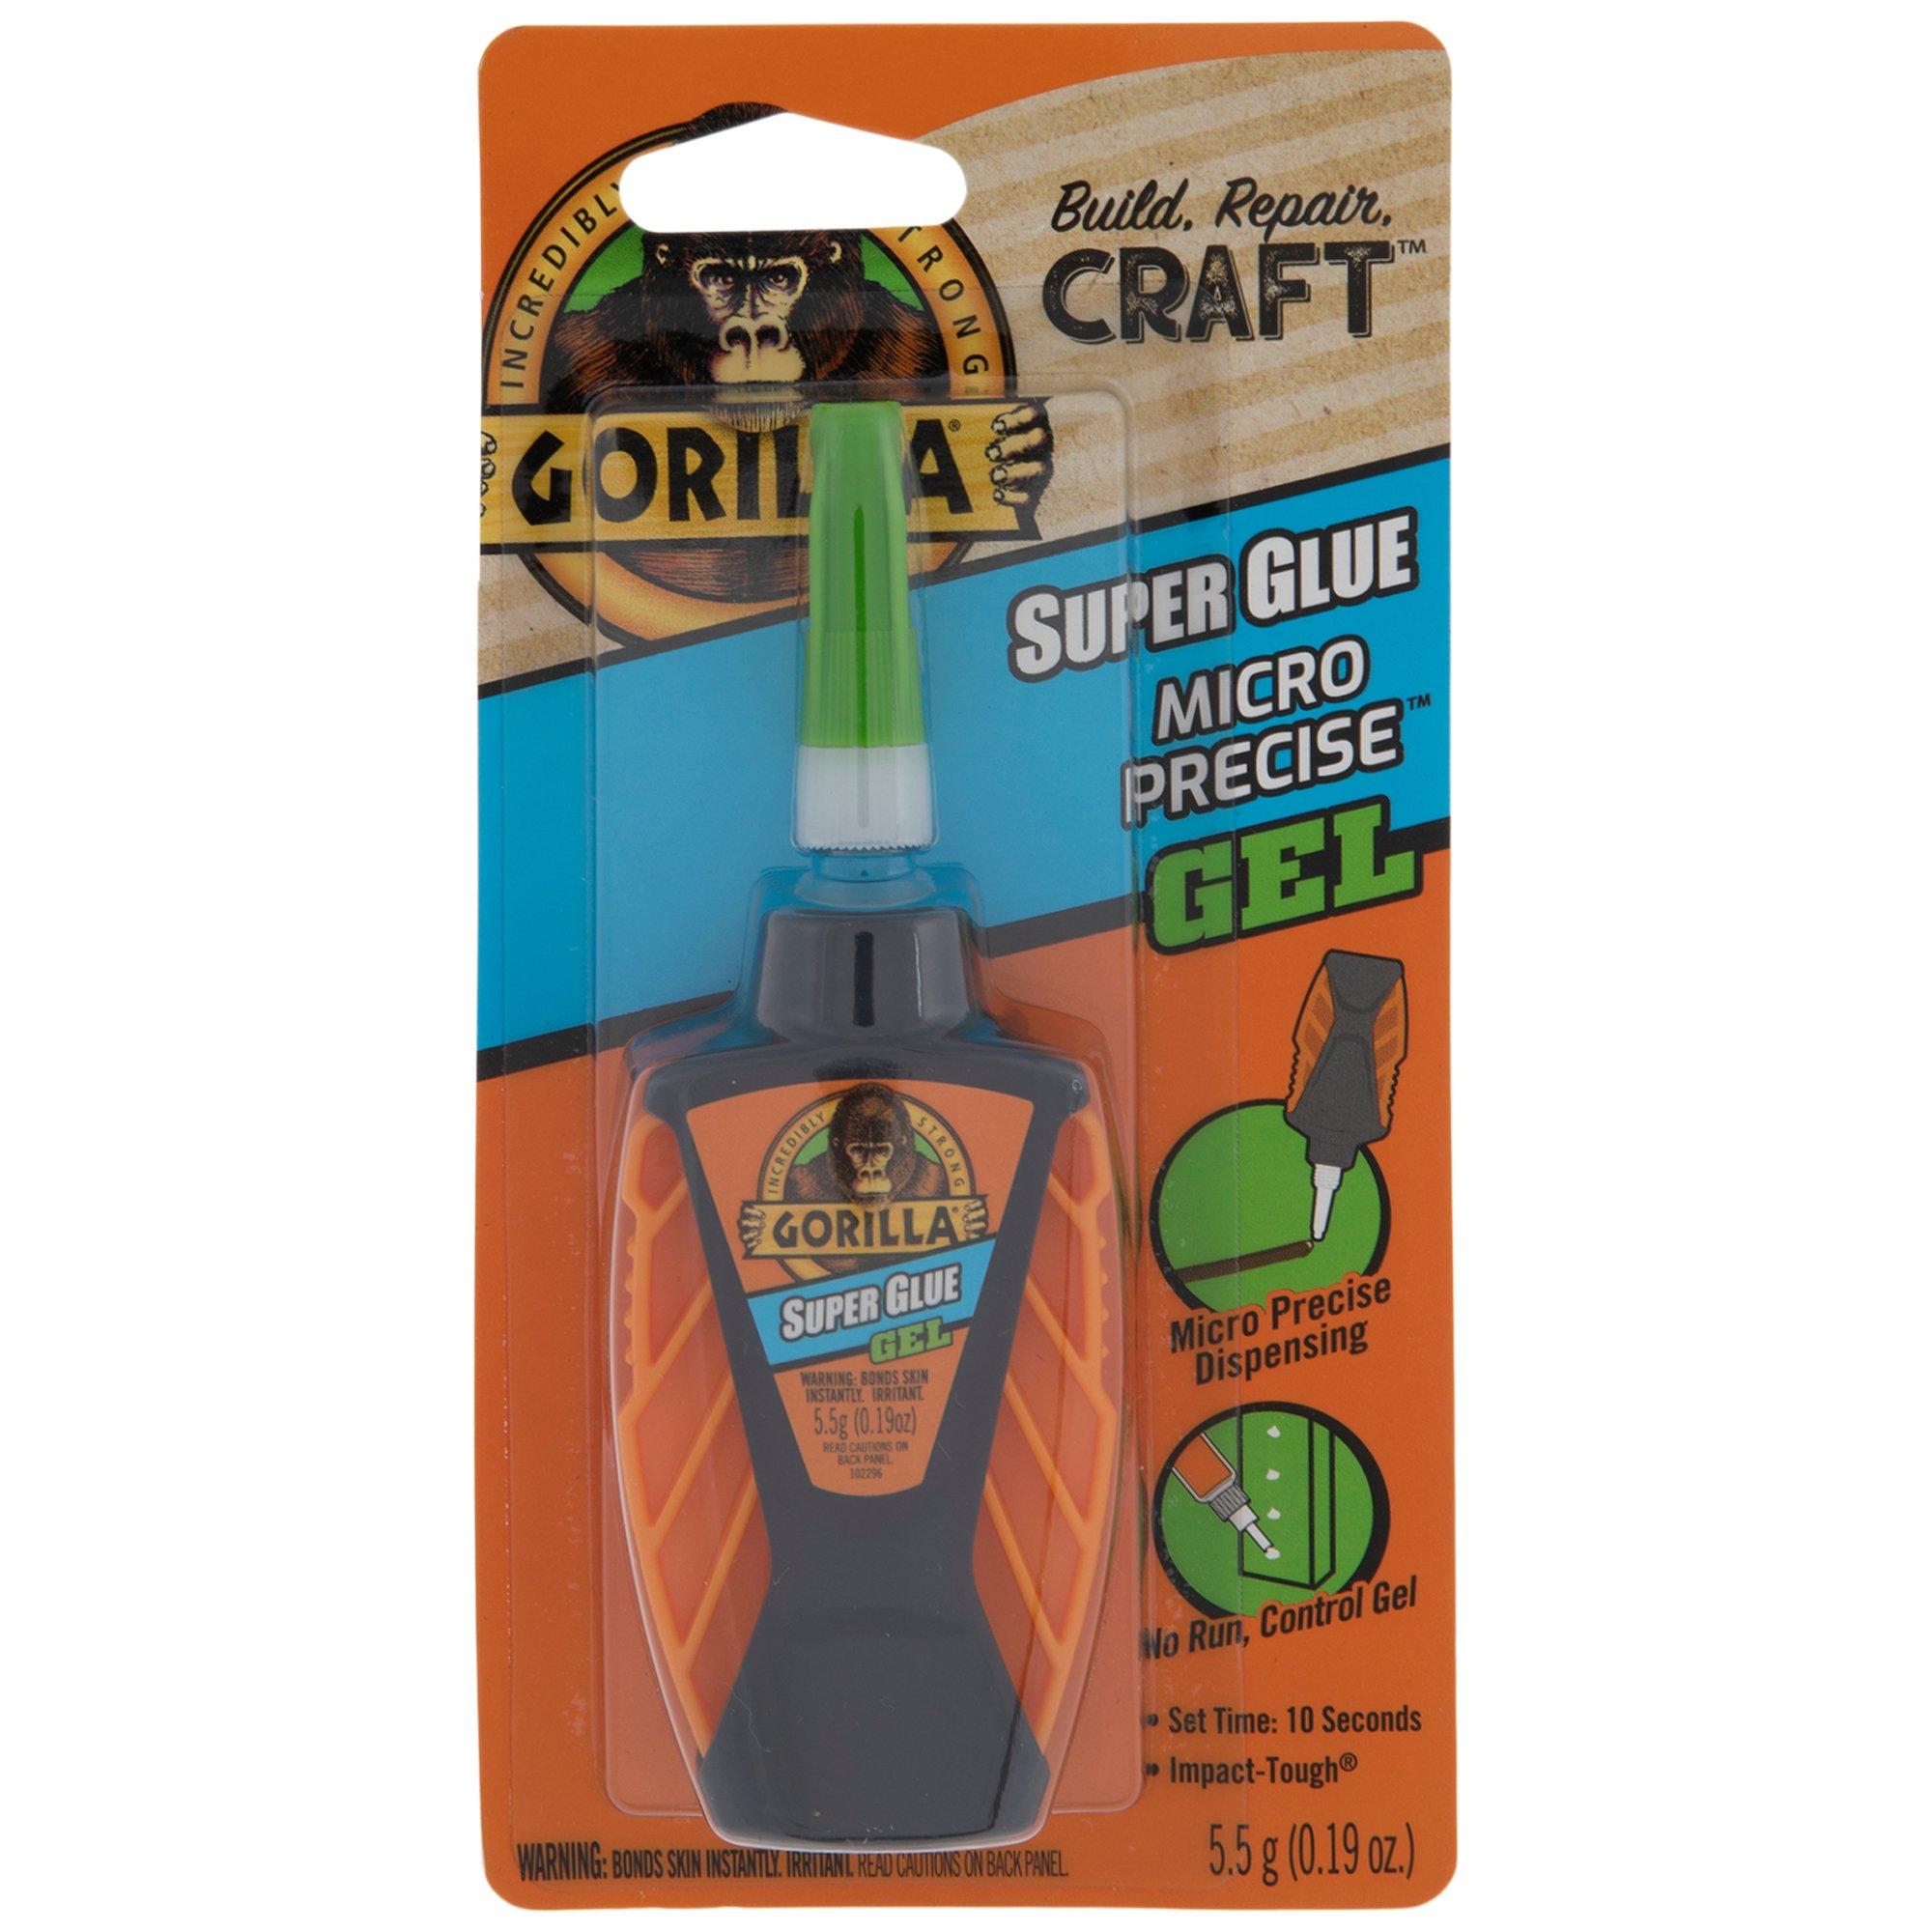 Gorilla Super Glue Gel, Micro Precise - 5.5 g